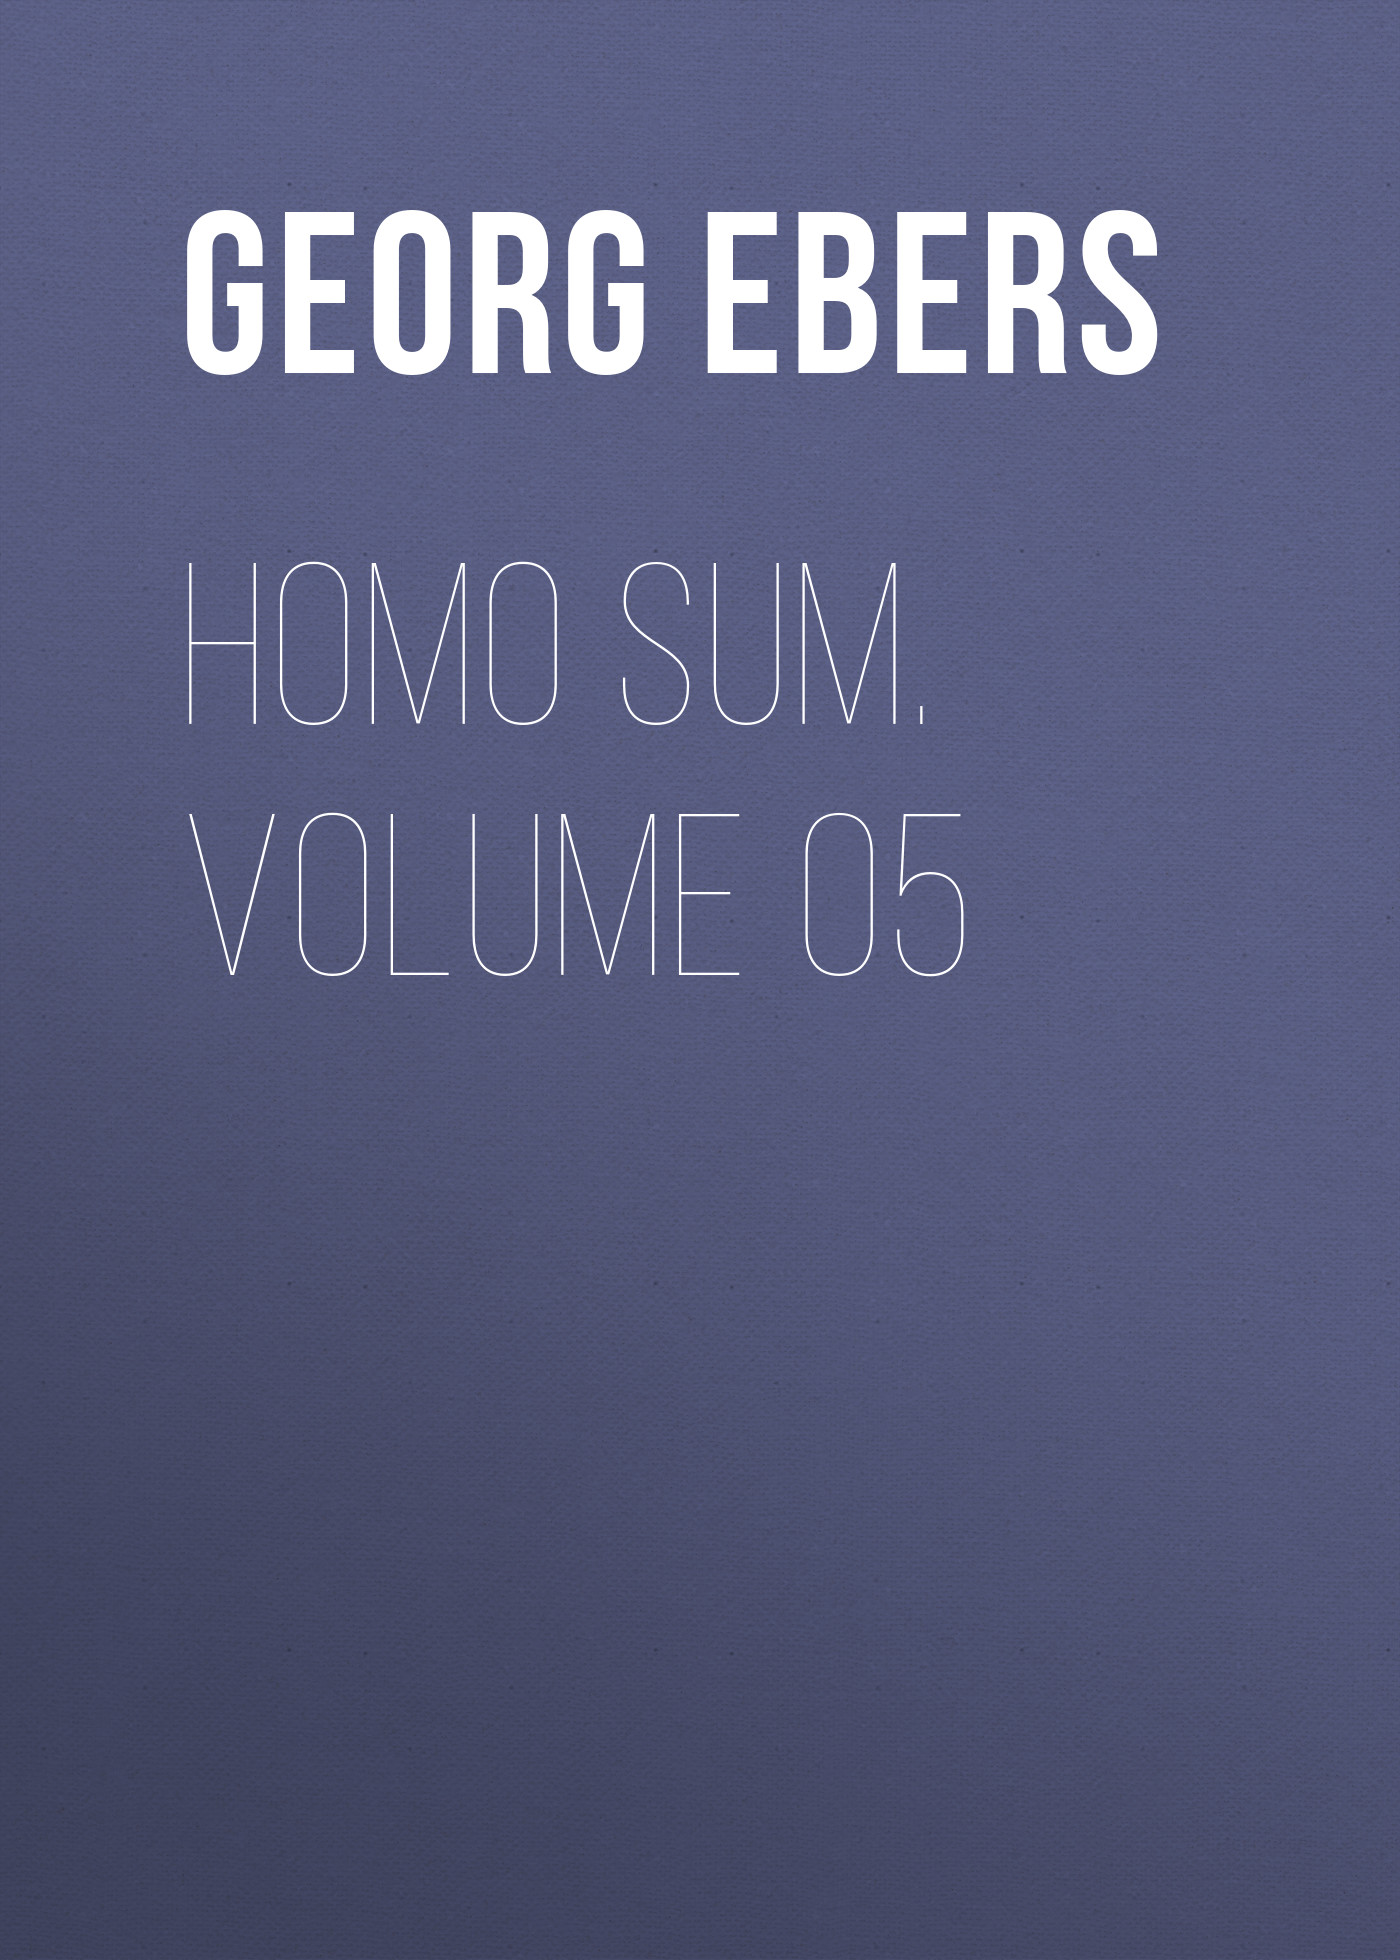 Книга Homo Sum. Volume 05 из серии , созданная Georg Ebers, может относится к жанру Зарубежная классика, Зарубежная старинная литература. Стоимость электронной книги Homo Sum. Volume 05 с идентификатором 42628163 составляет 0 руб.